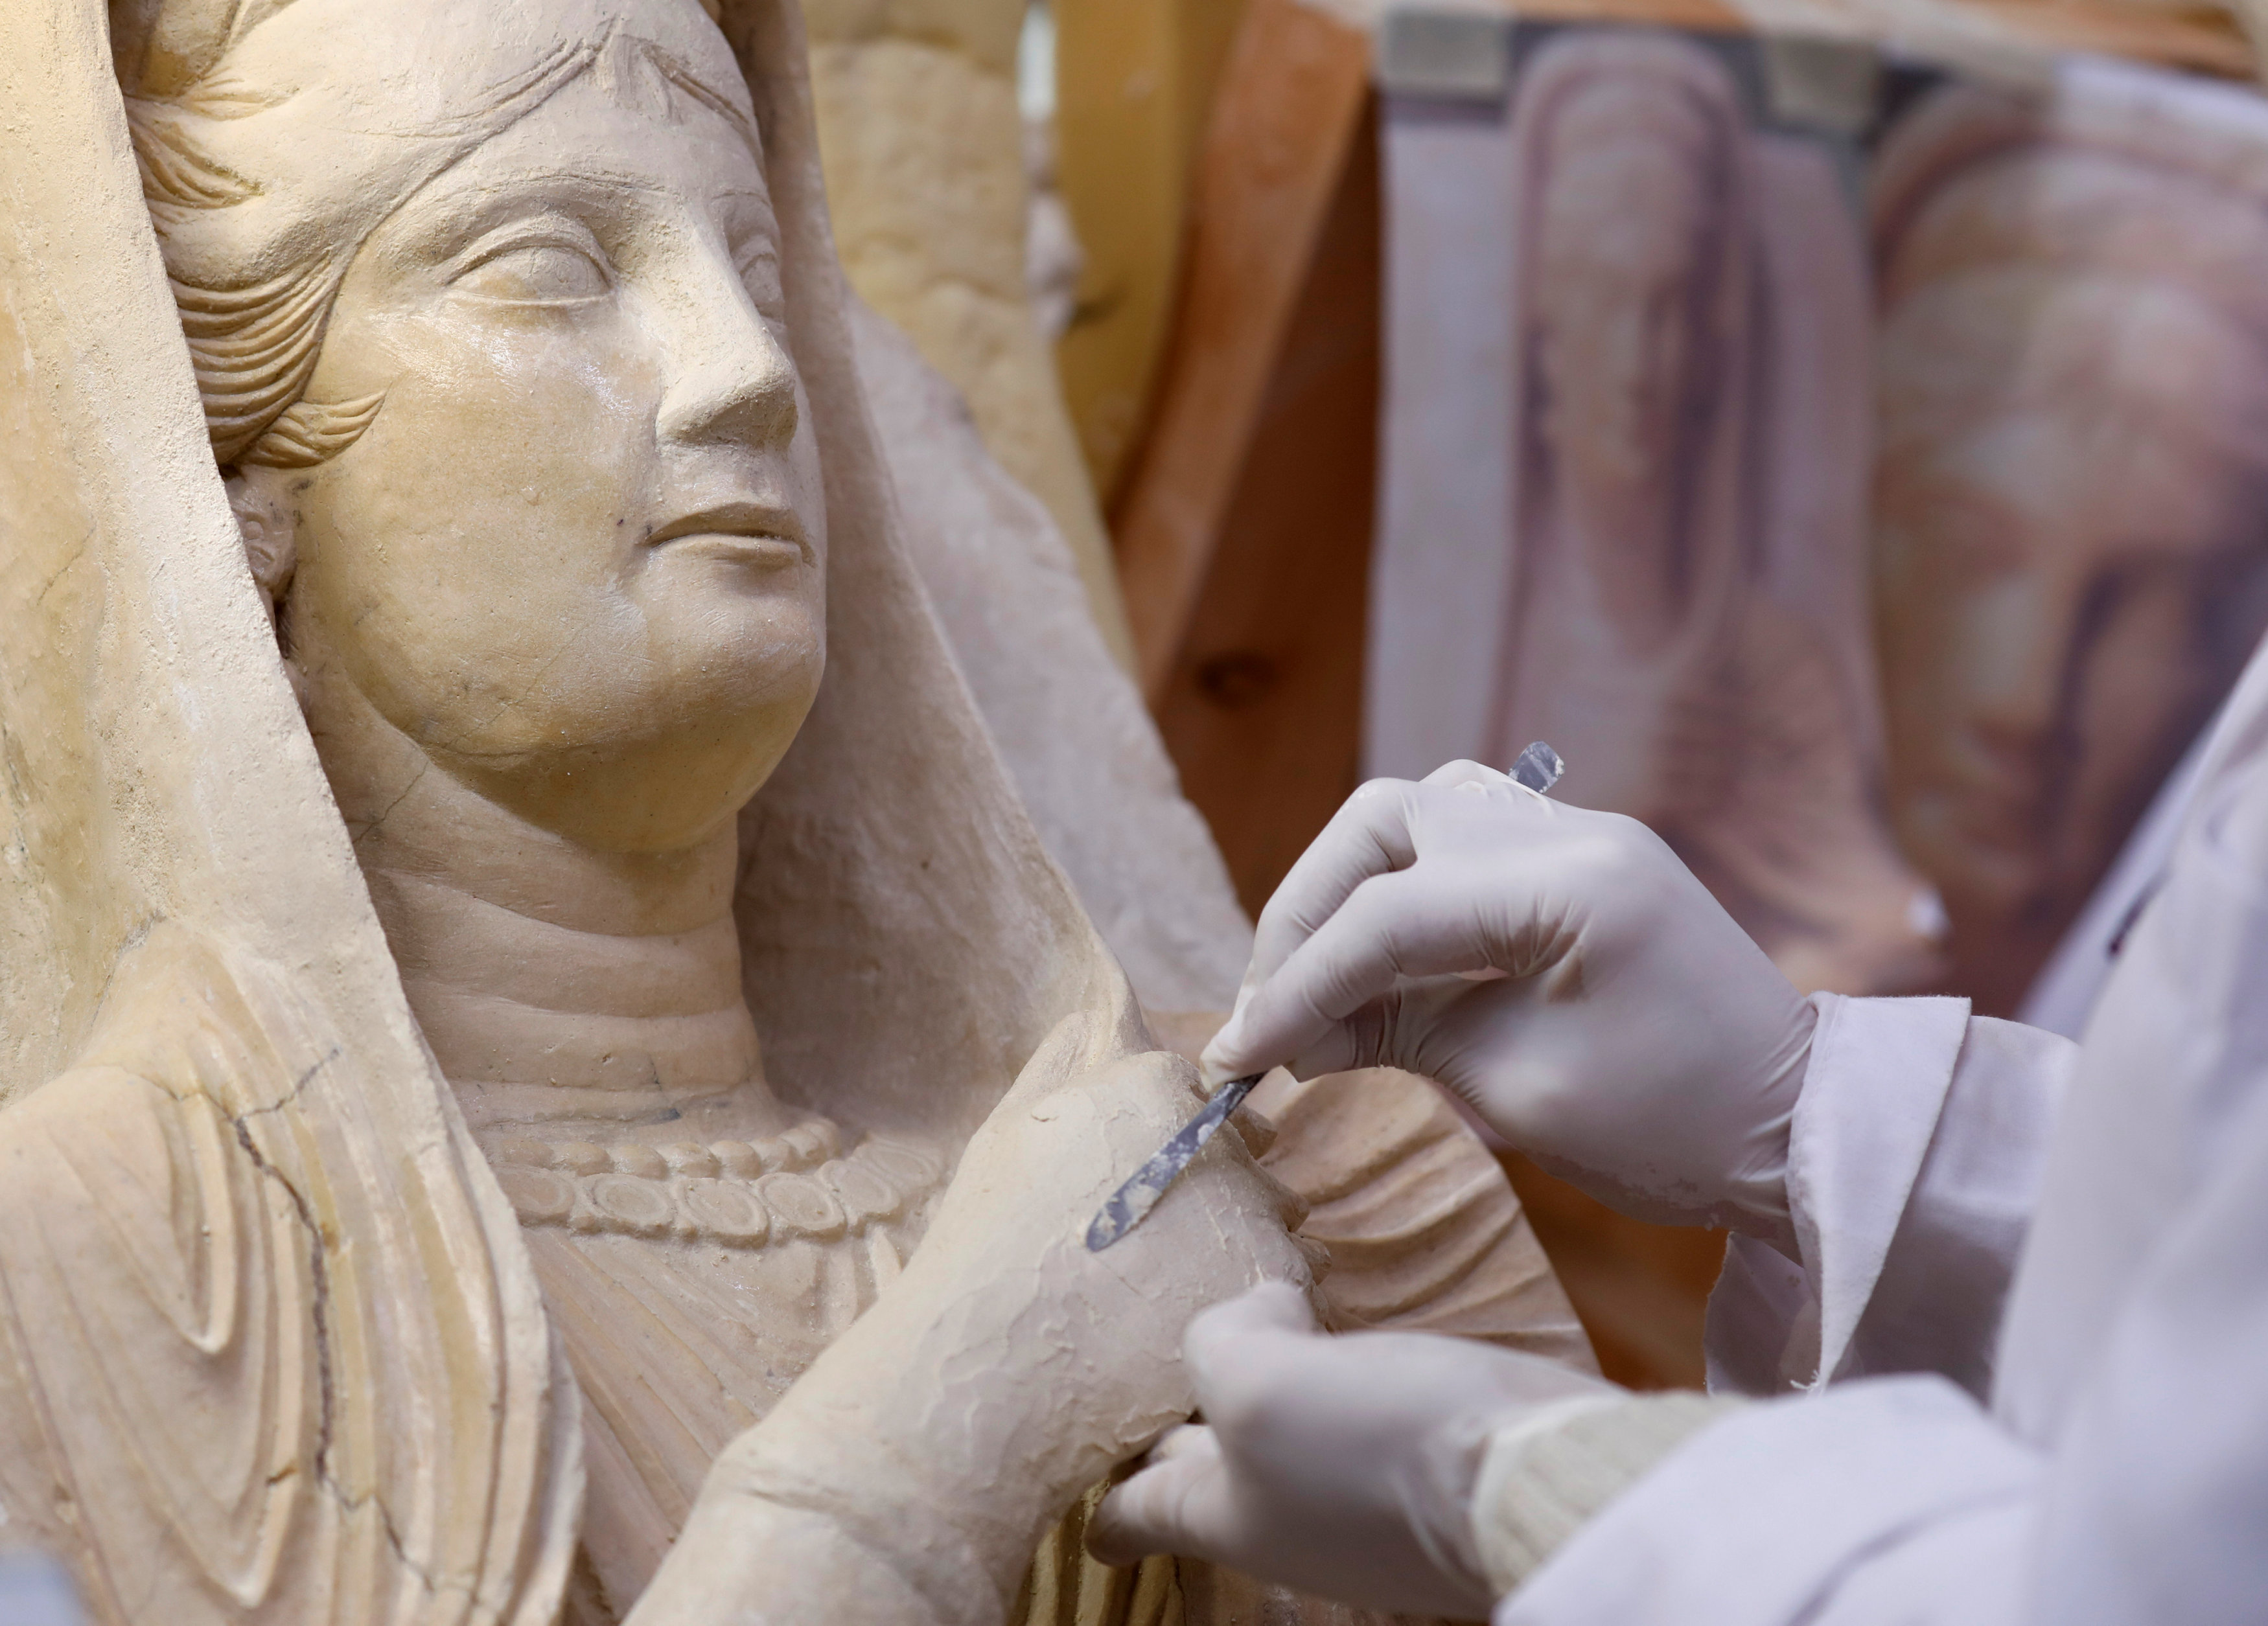  نقل 20 قطعة أثرية سورية إلى المتحف الوطني التشيكي لترميمها